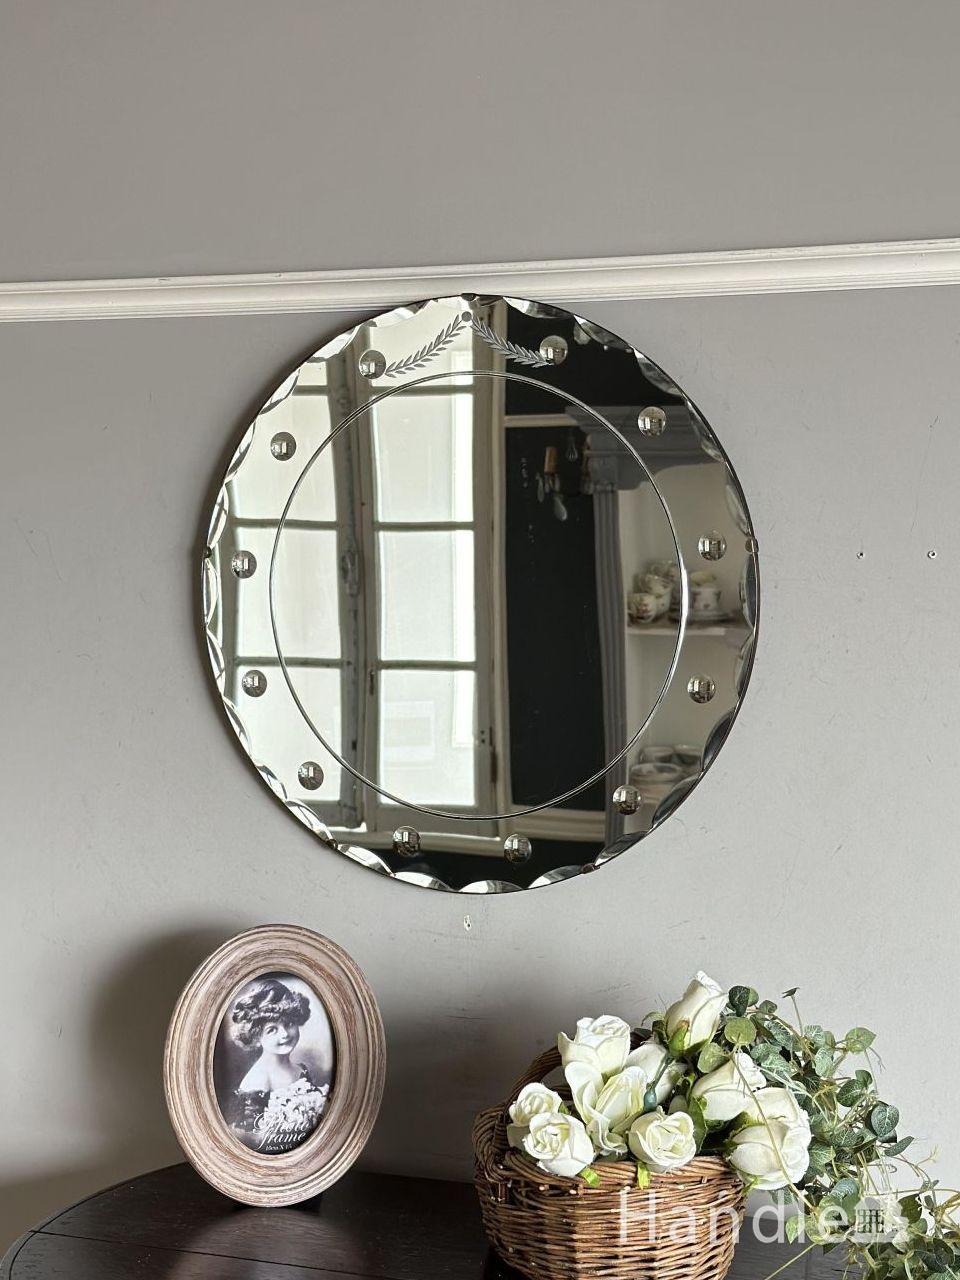 英国アンティークのおしゃれな壁掛け鏡、ドットの模様がデザイン